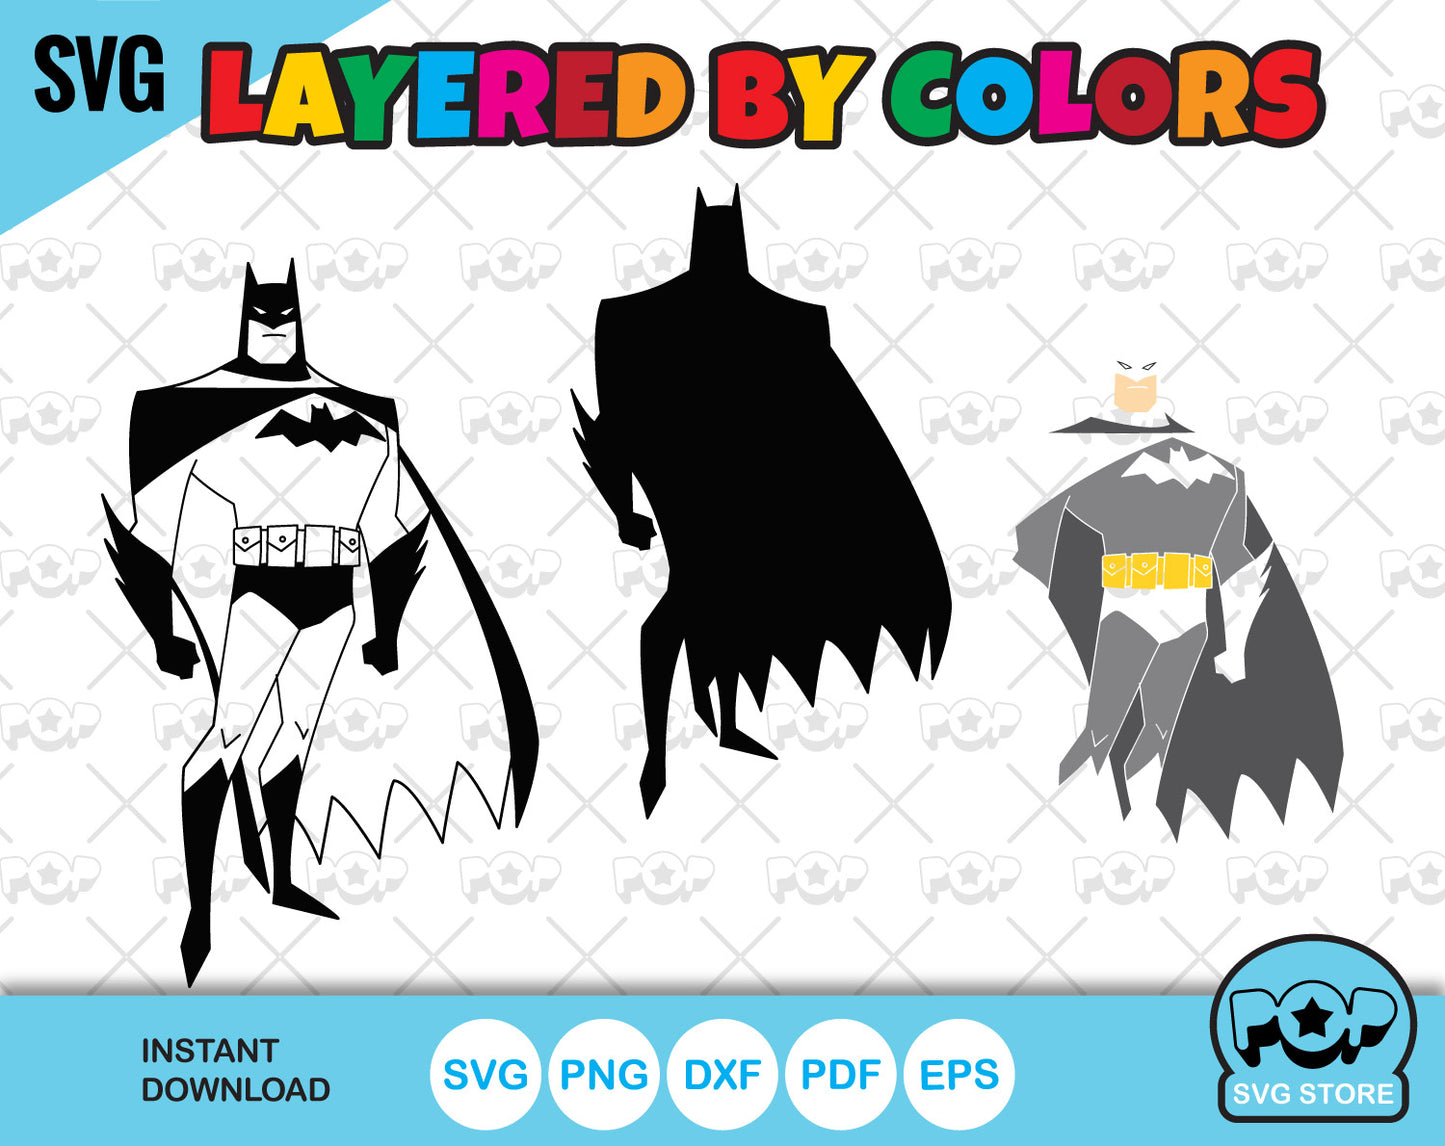 Batman 100 cliparts bundle, Batman SVG cut files for Cricut / Silhouette, PNG, DXF, instant download